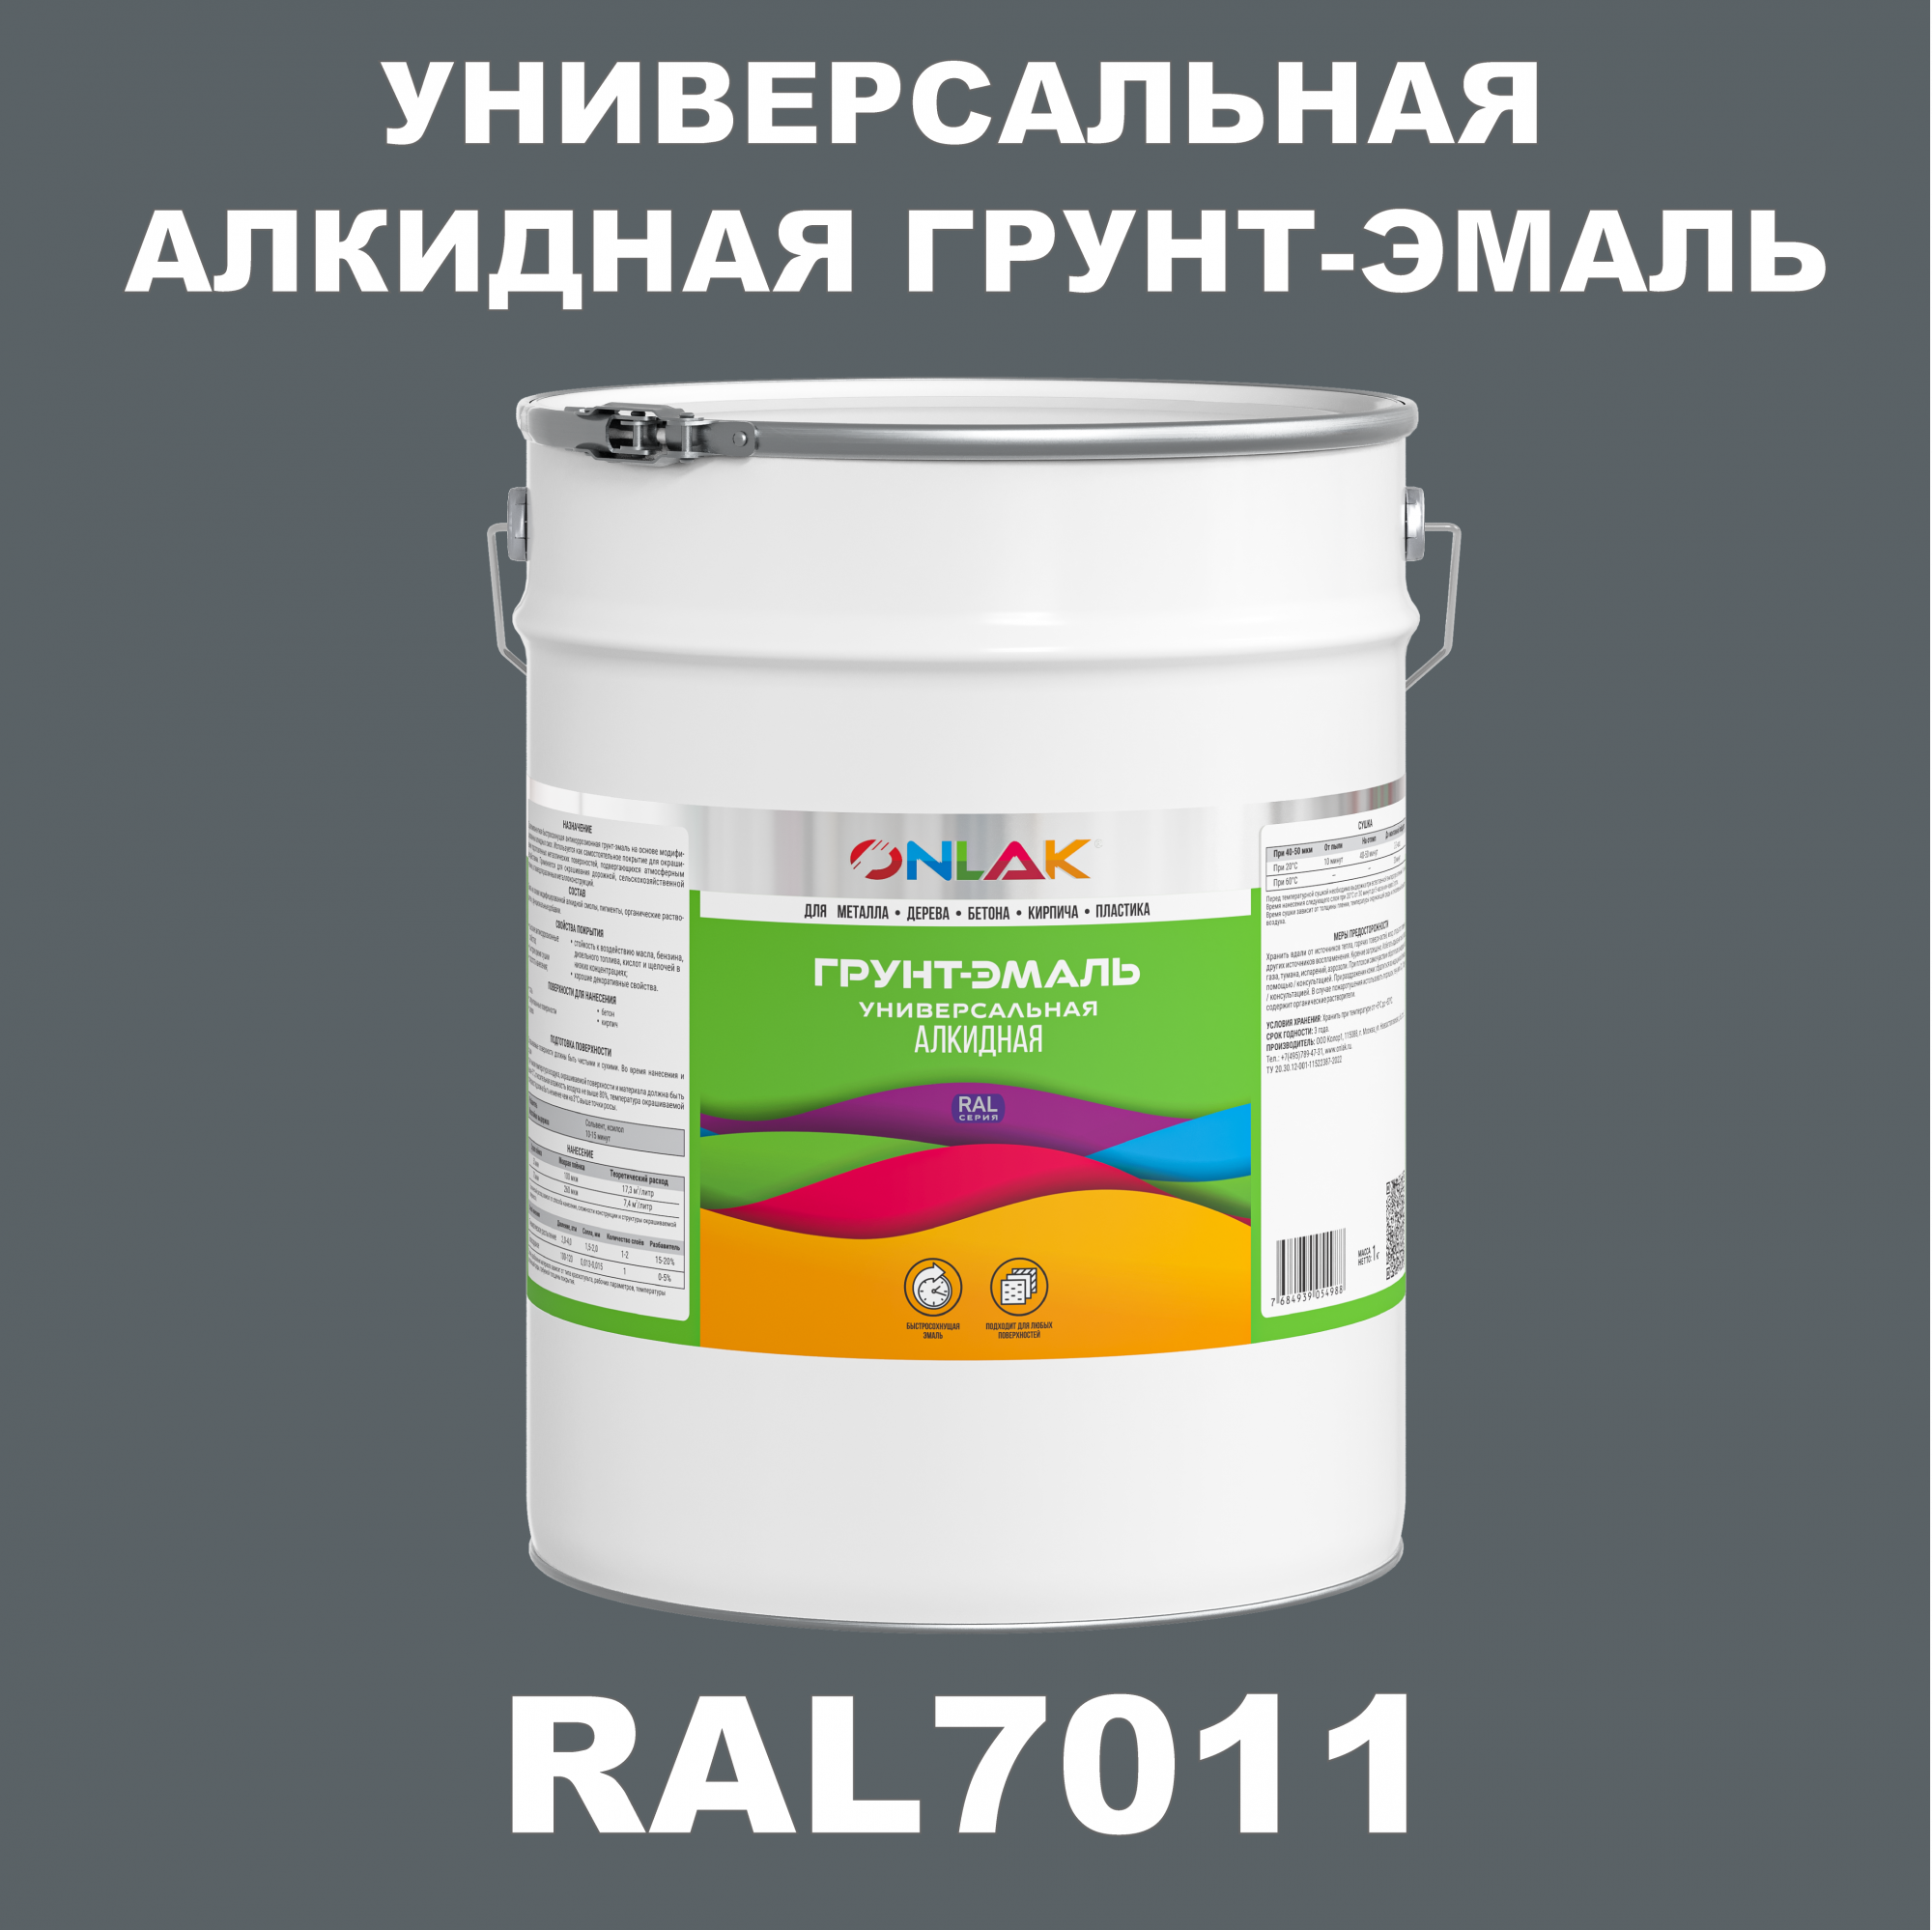 Грунт-эмаль ONLAK 1К RAL7011 антикоррозионная алкидная по металлу по ржавчине 20 кг